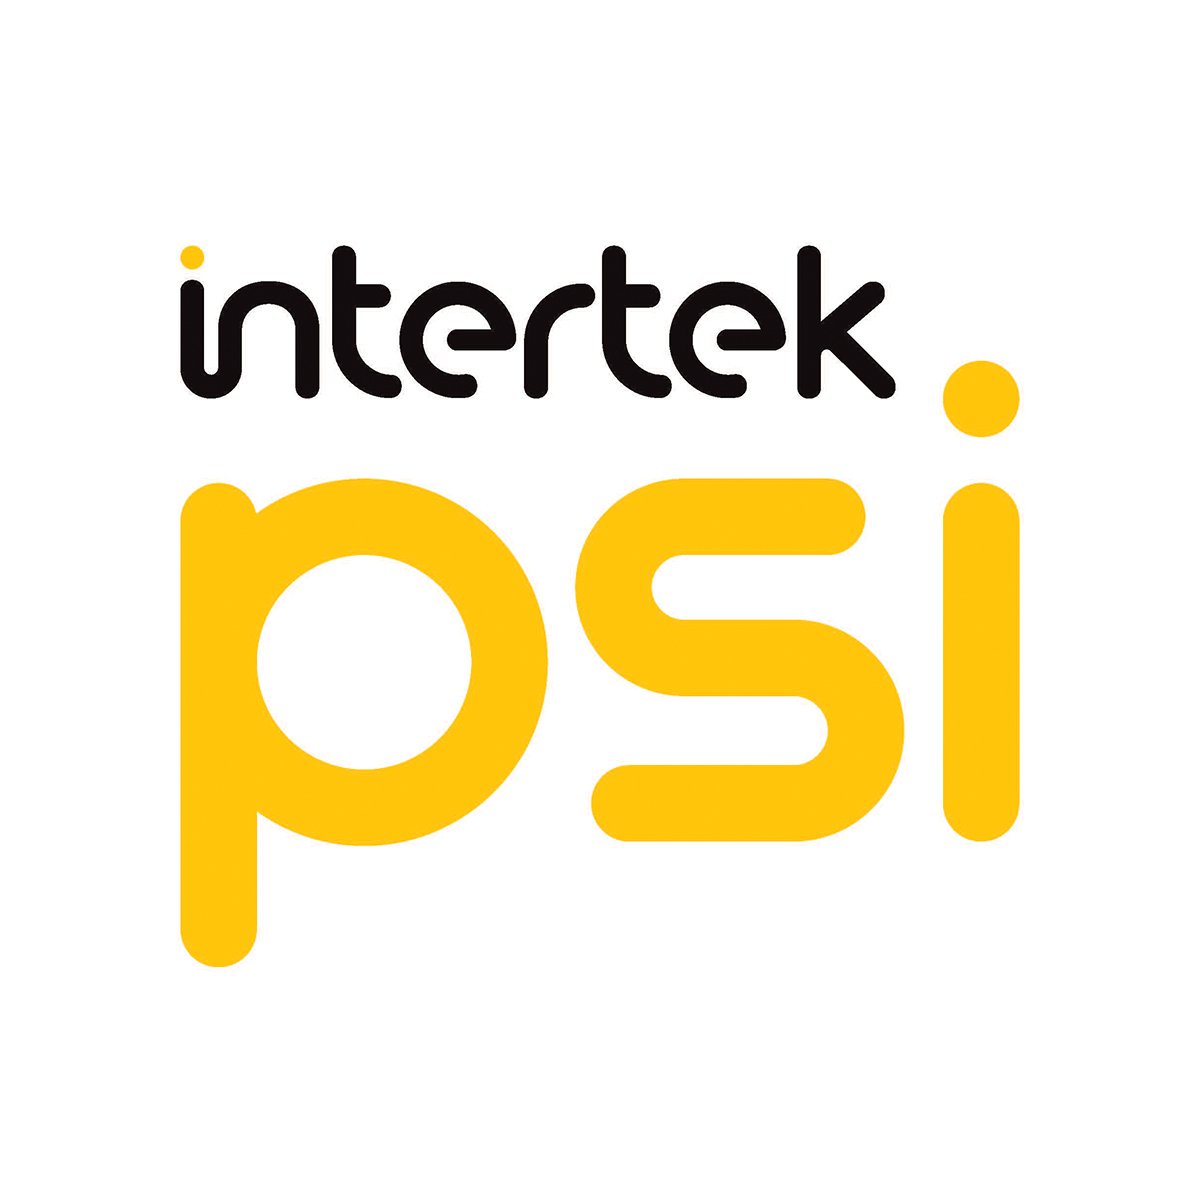 Intertek PSI logo.jpg